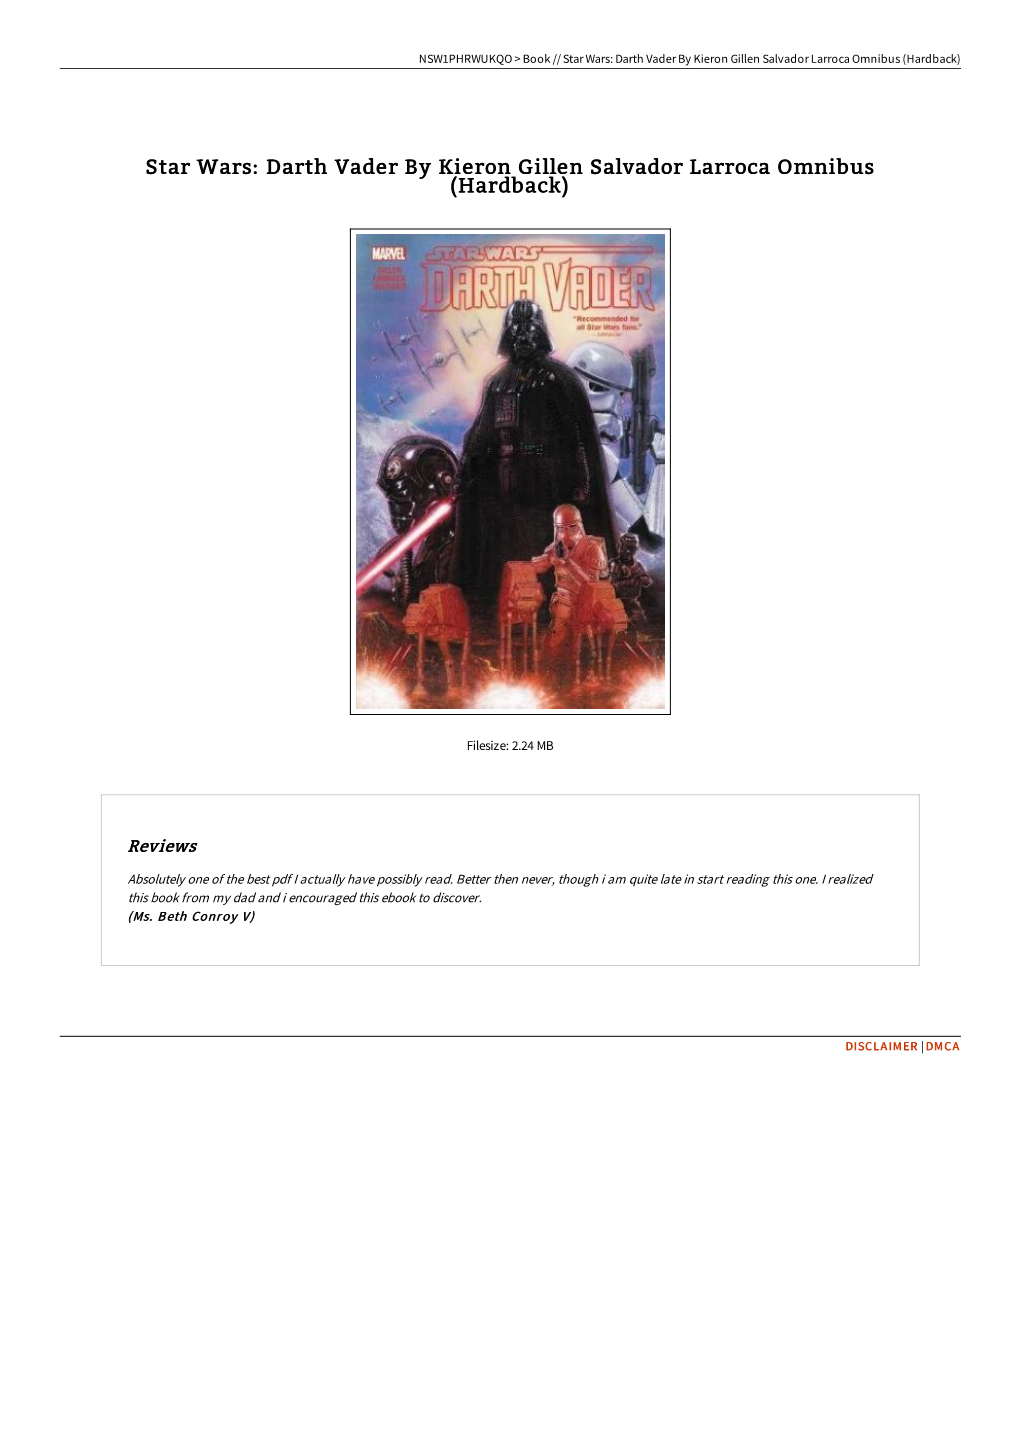 Find Book \ Star Wars: Darth Vader by Kieron Gillen Salvador Larroca